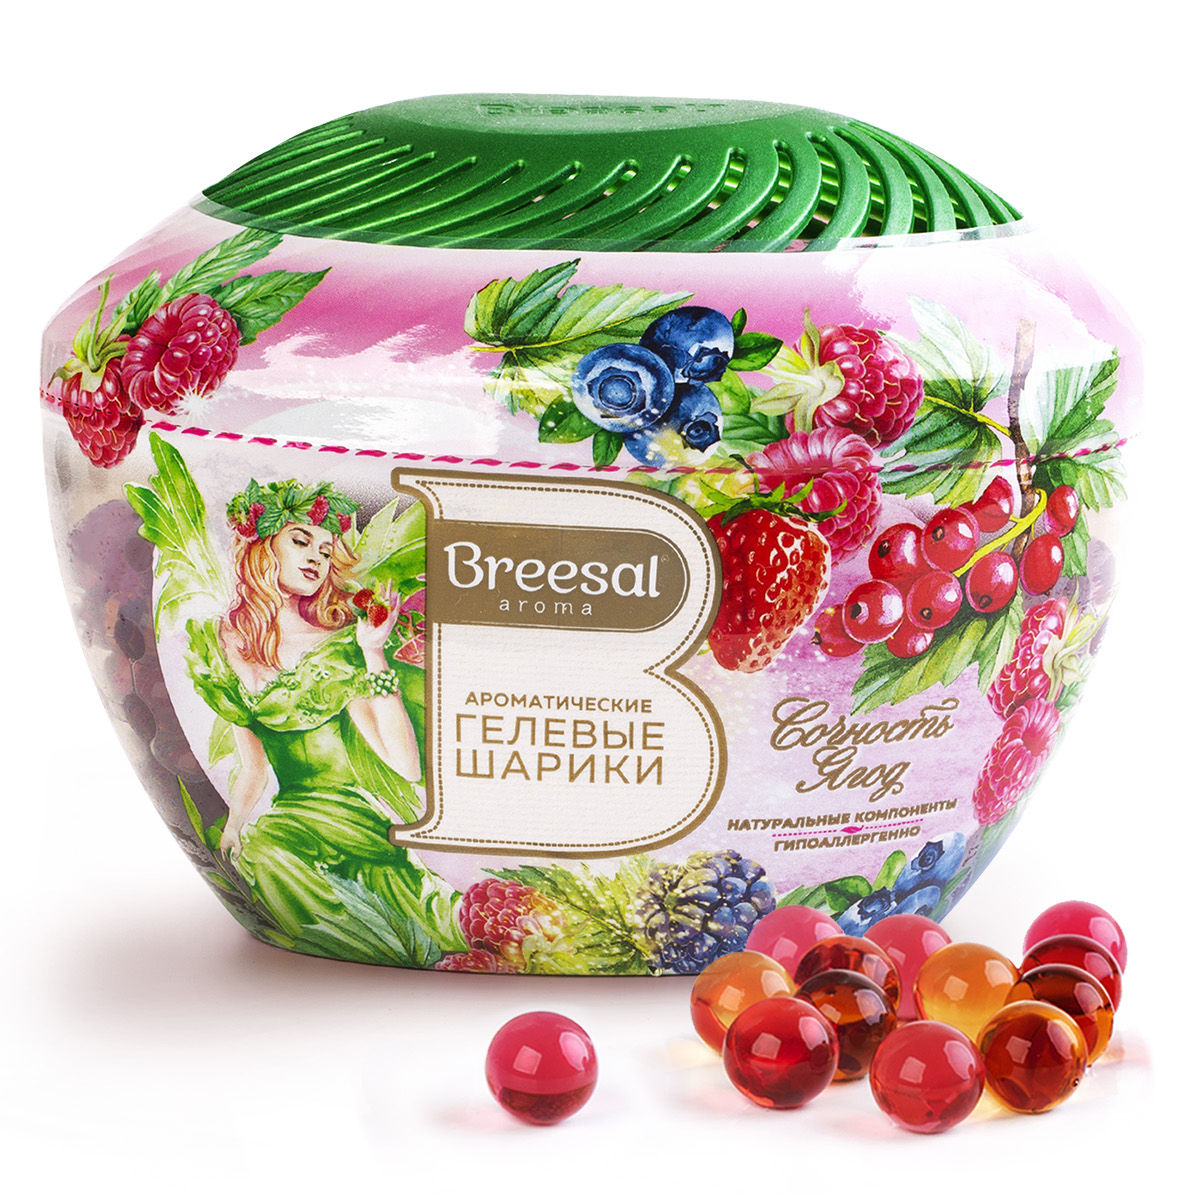 Ароматические гелевые шарики Breesal Fresh Drops Сочность ягод, 215 мл пеленки угольные шестислойные гелевые для животных 33 х 45 см 10 шт